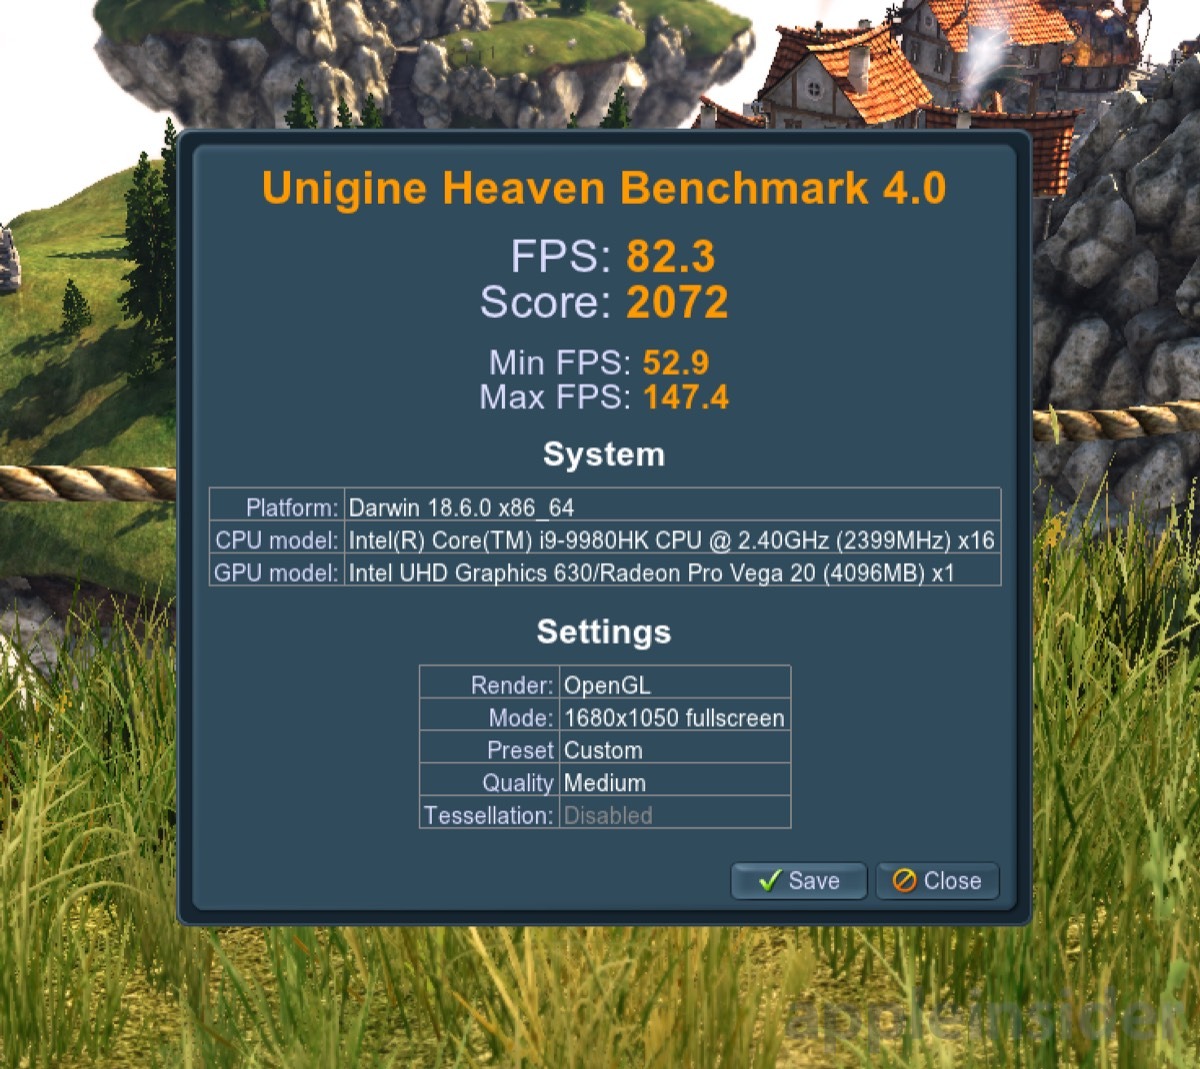 Unigine Heaven benchmark results